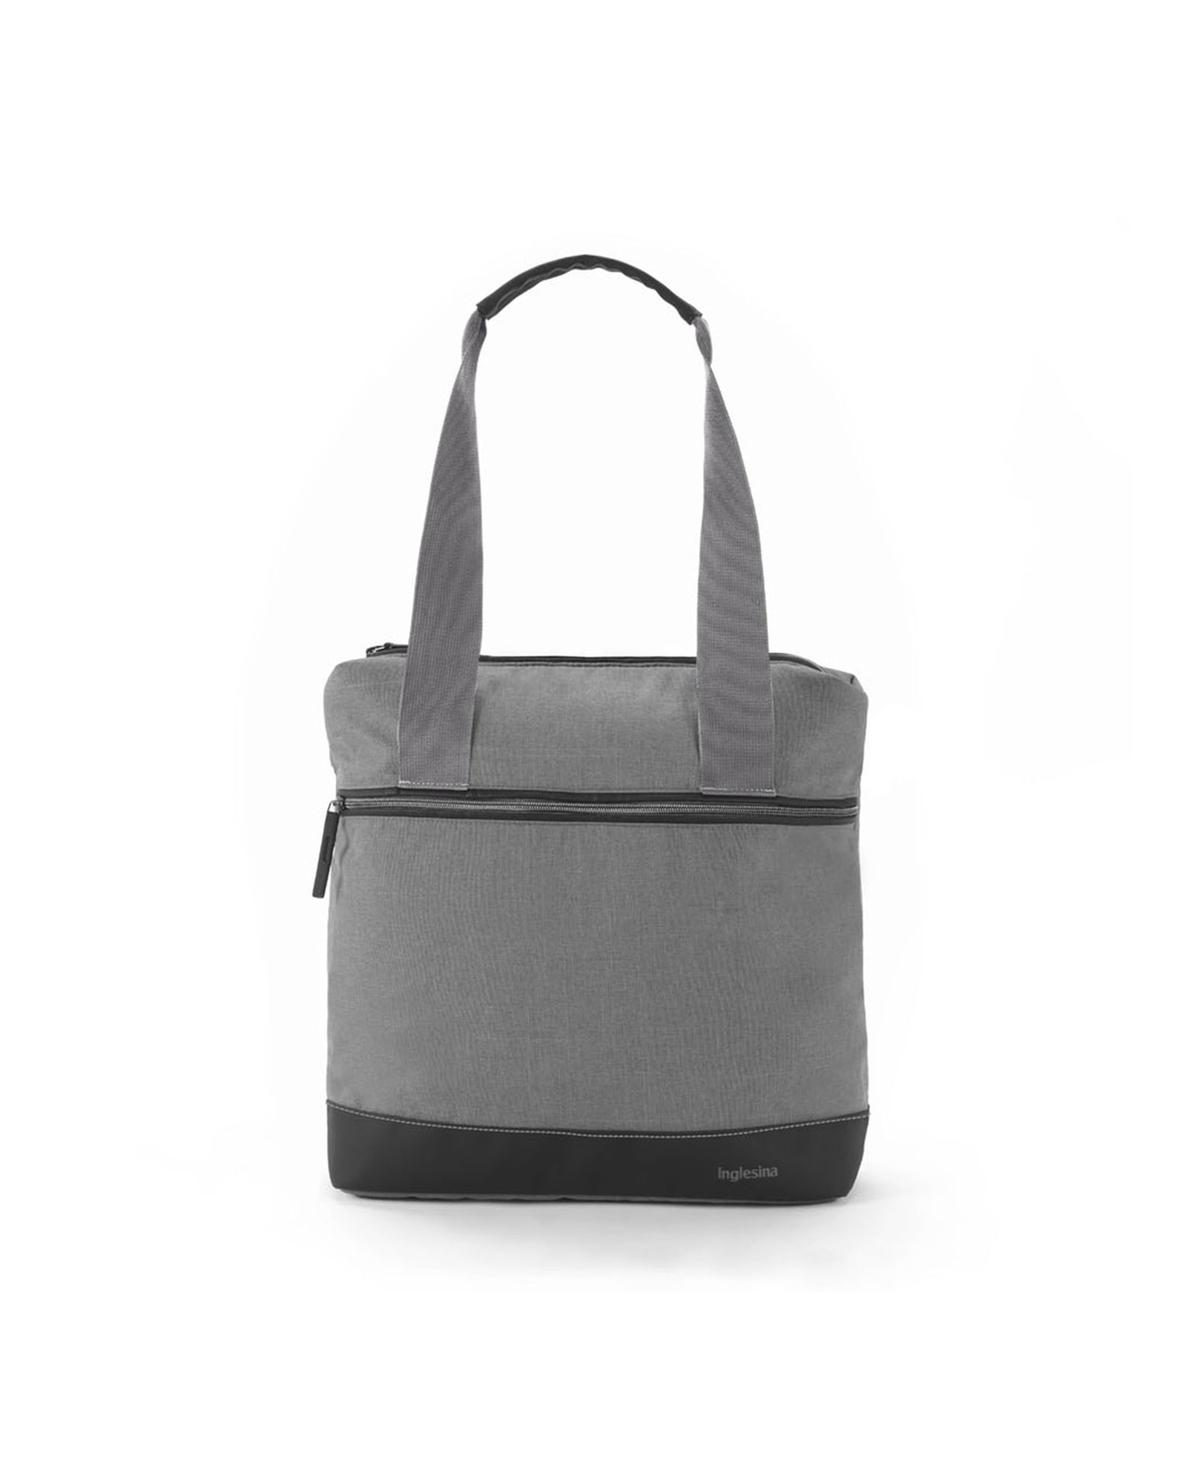 Inglesina-back bag colore kensington grey - Inglesina